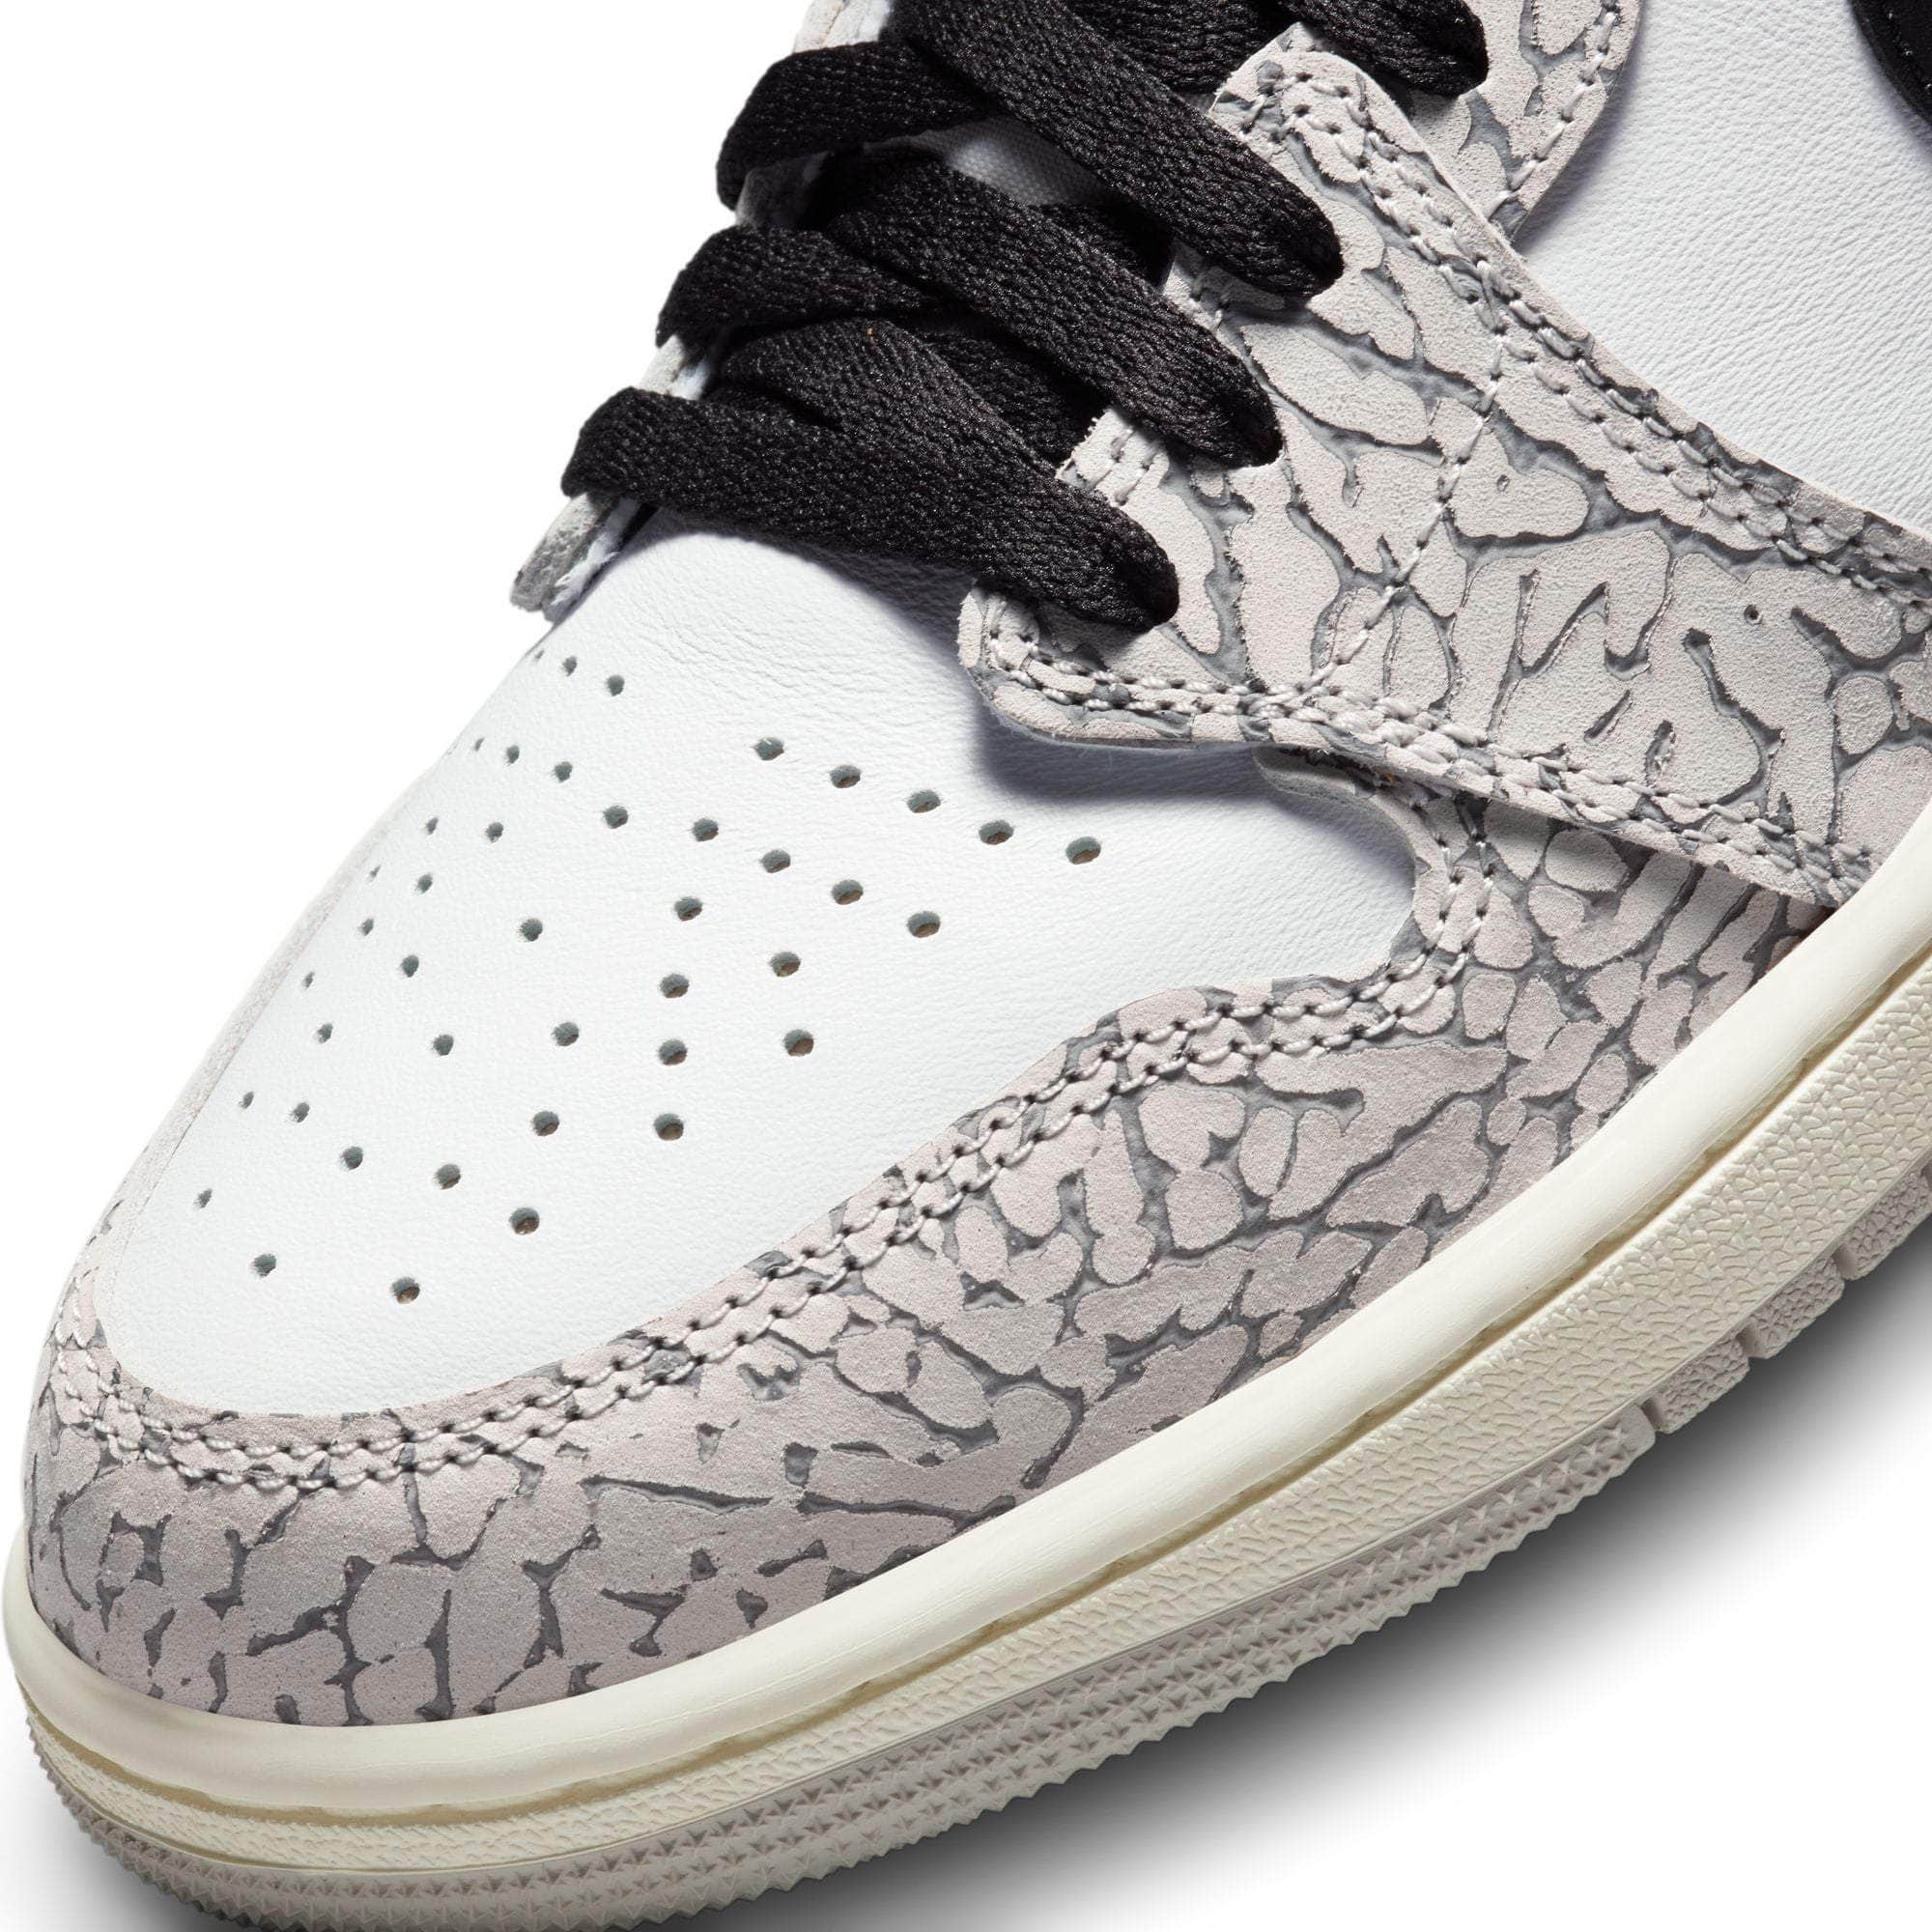 Air Jordan FOOTWEAR Air Jordan 1 Retro High OG "White Cement" - Men's